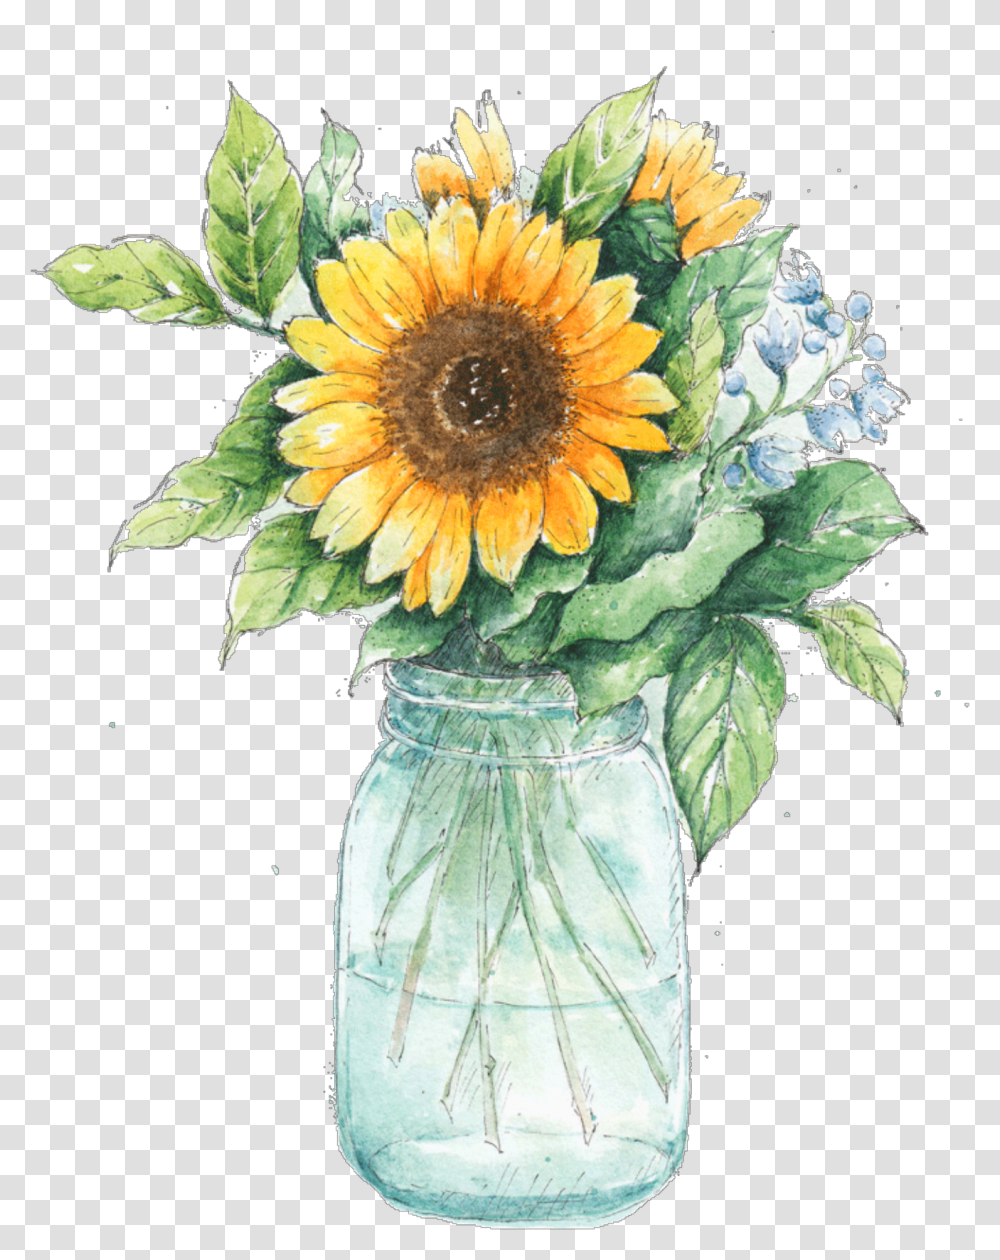 Watercolor Clipart Free 50 Photos Vase Of Sunflowers, Plant, Blossom, Flower Arrangement, Flower Bouquet Transparent Png